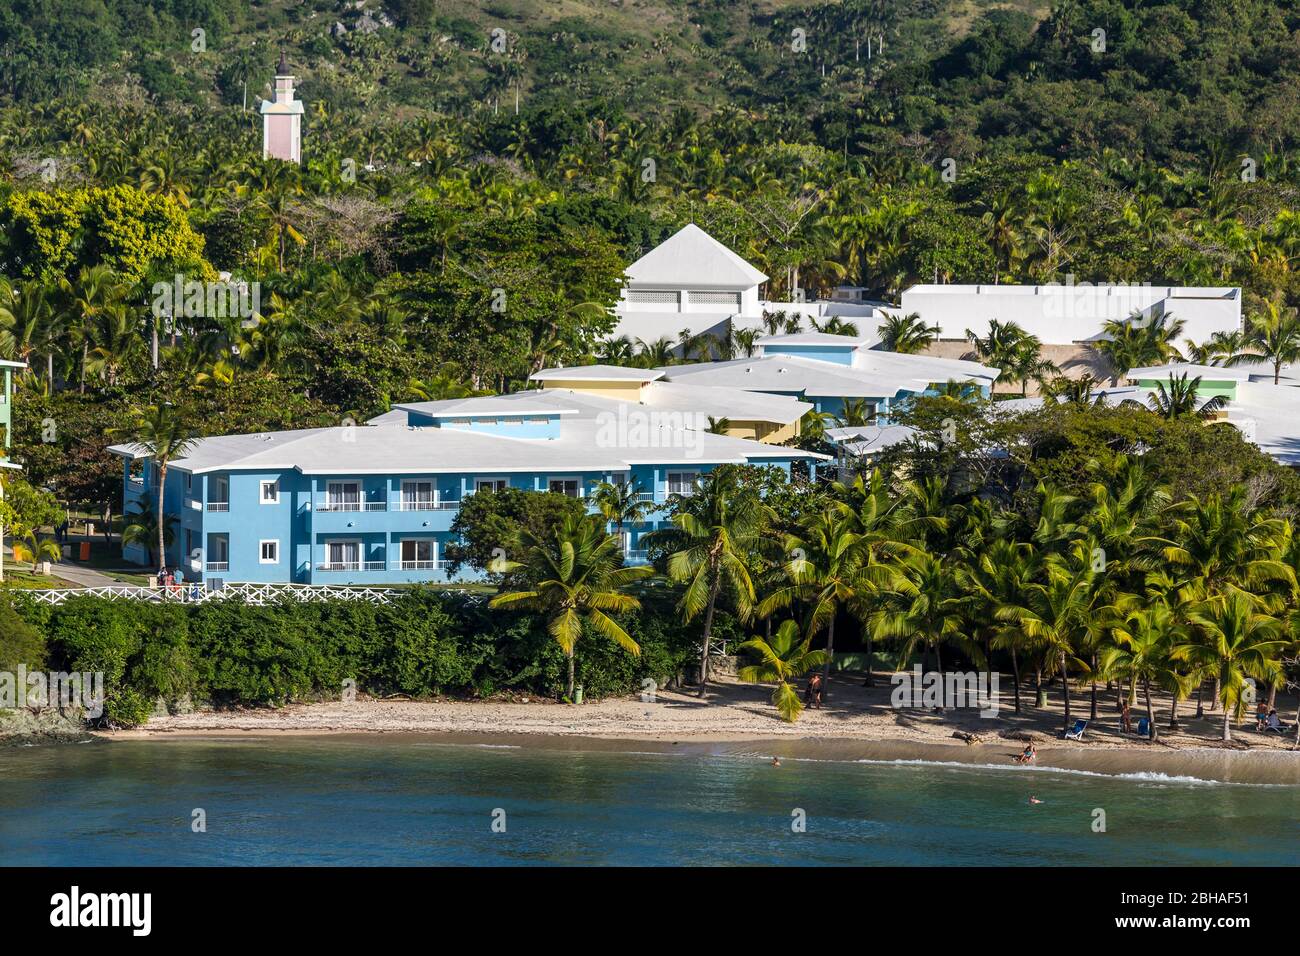 Hotelanlage und Strand, Aussicht vom Kreuzfahrtschiff, Touristenzentrum, Amber Cove Cruise Terminal, Hafen, Maimón, Dominikanische Republik, Große Ant Stock Photo